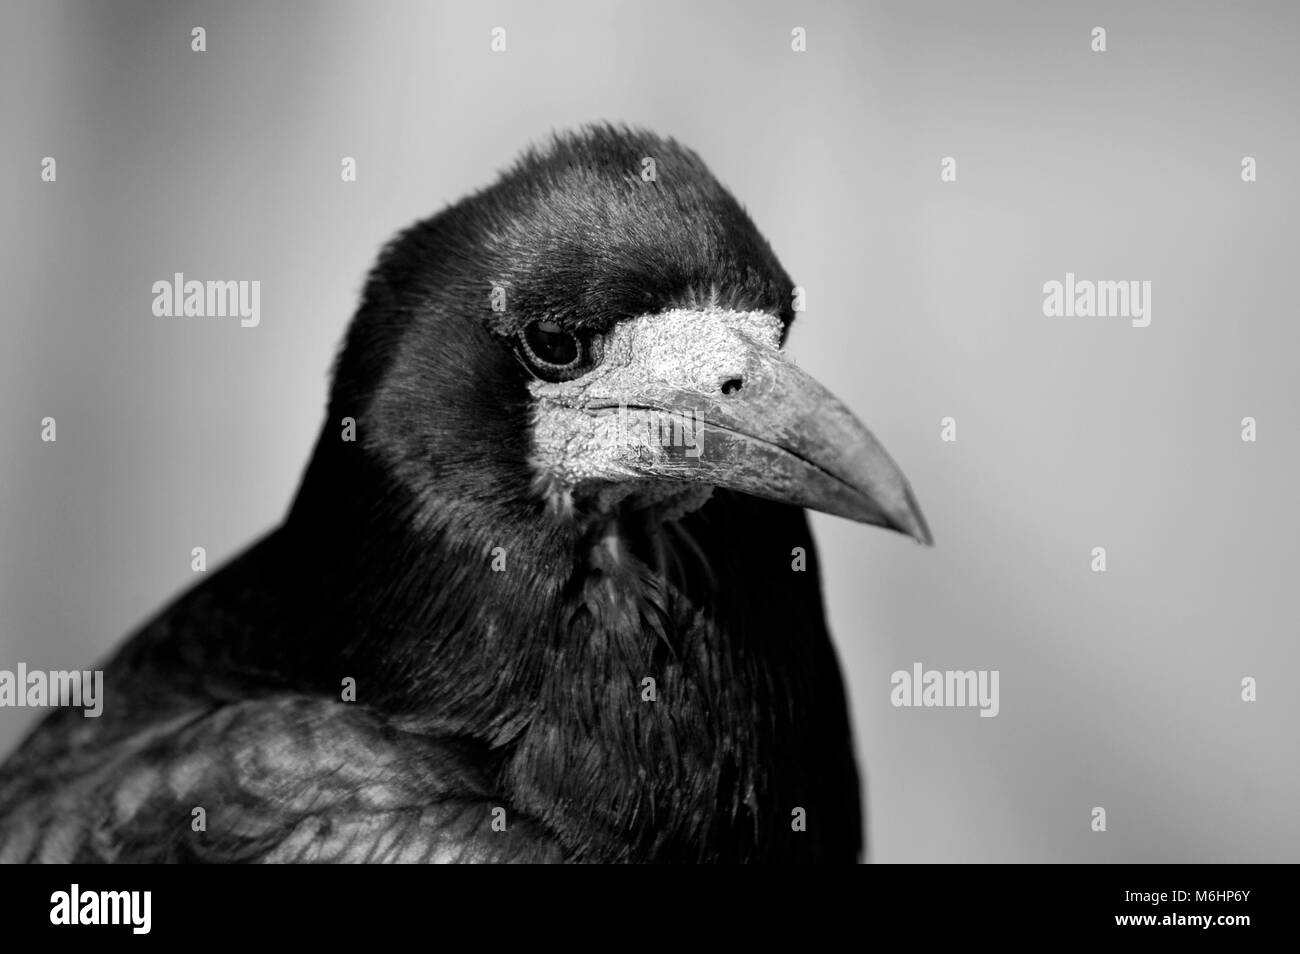 Imagen en blanco y negro de rook, cabeza corvid uk Foto de stock